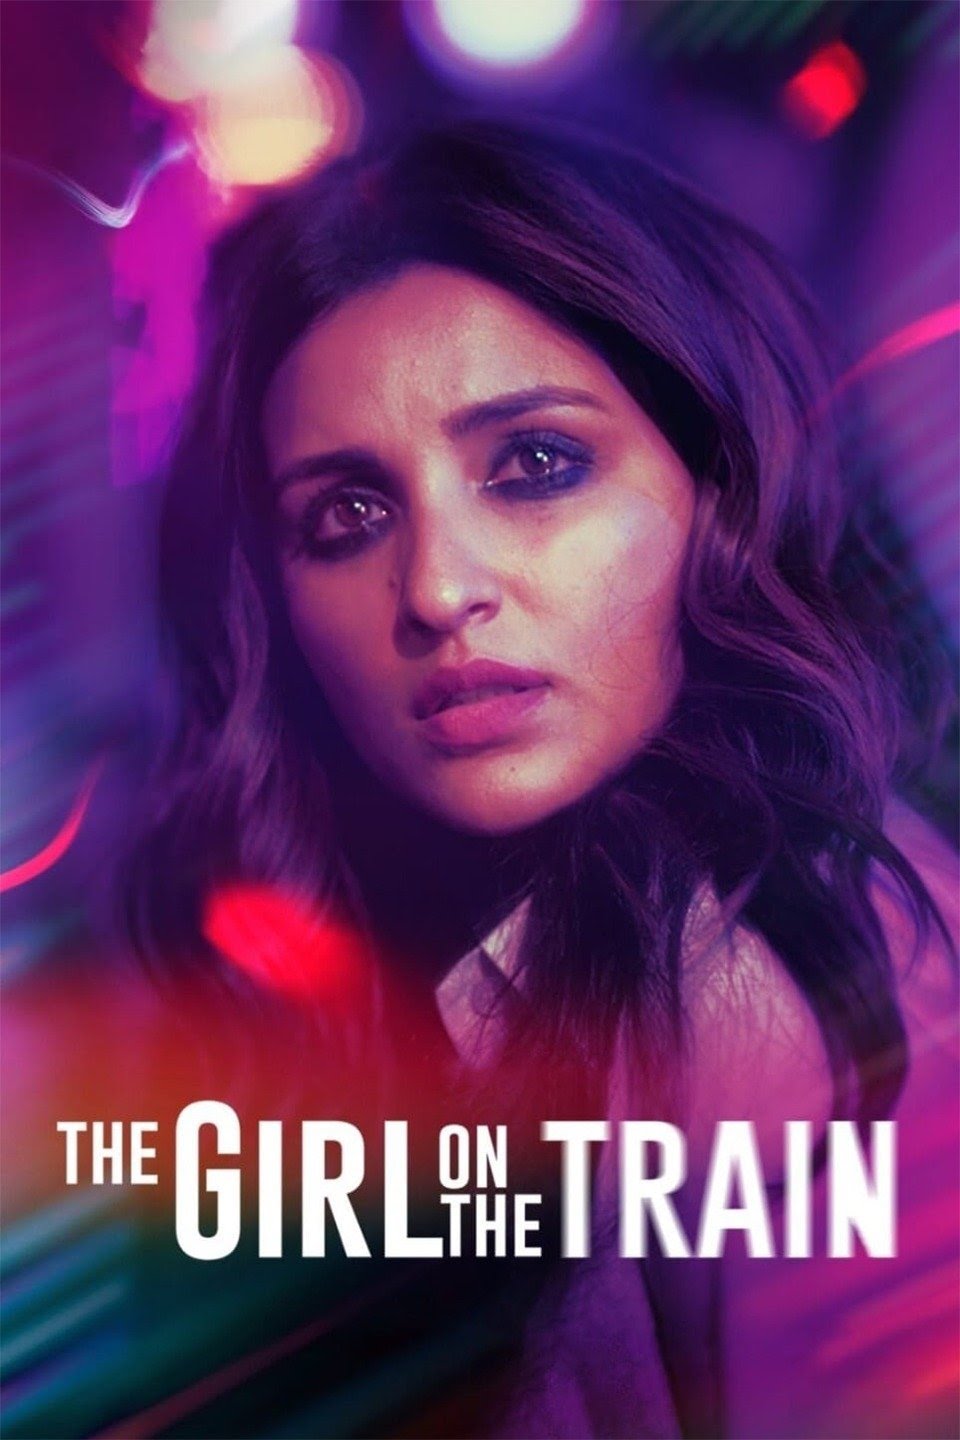 [อินเดีย] The Girl on the Train (2021) ฝันร้ายบนเส้นทางหลอน [1080p] [NETFLIX] [พากย์อินเดีย 5.1] [Soundtrack บรรยายไทย + อังกฤษ] [เสียงอินเดีย + ซับไทย] [PANDAFILE]